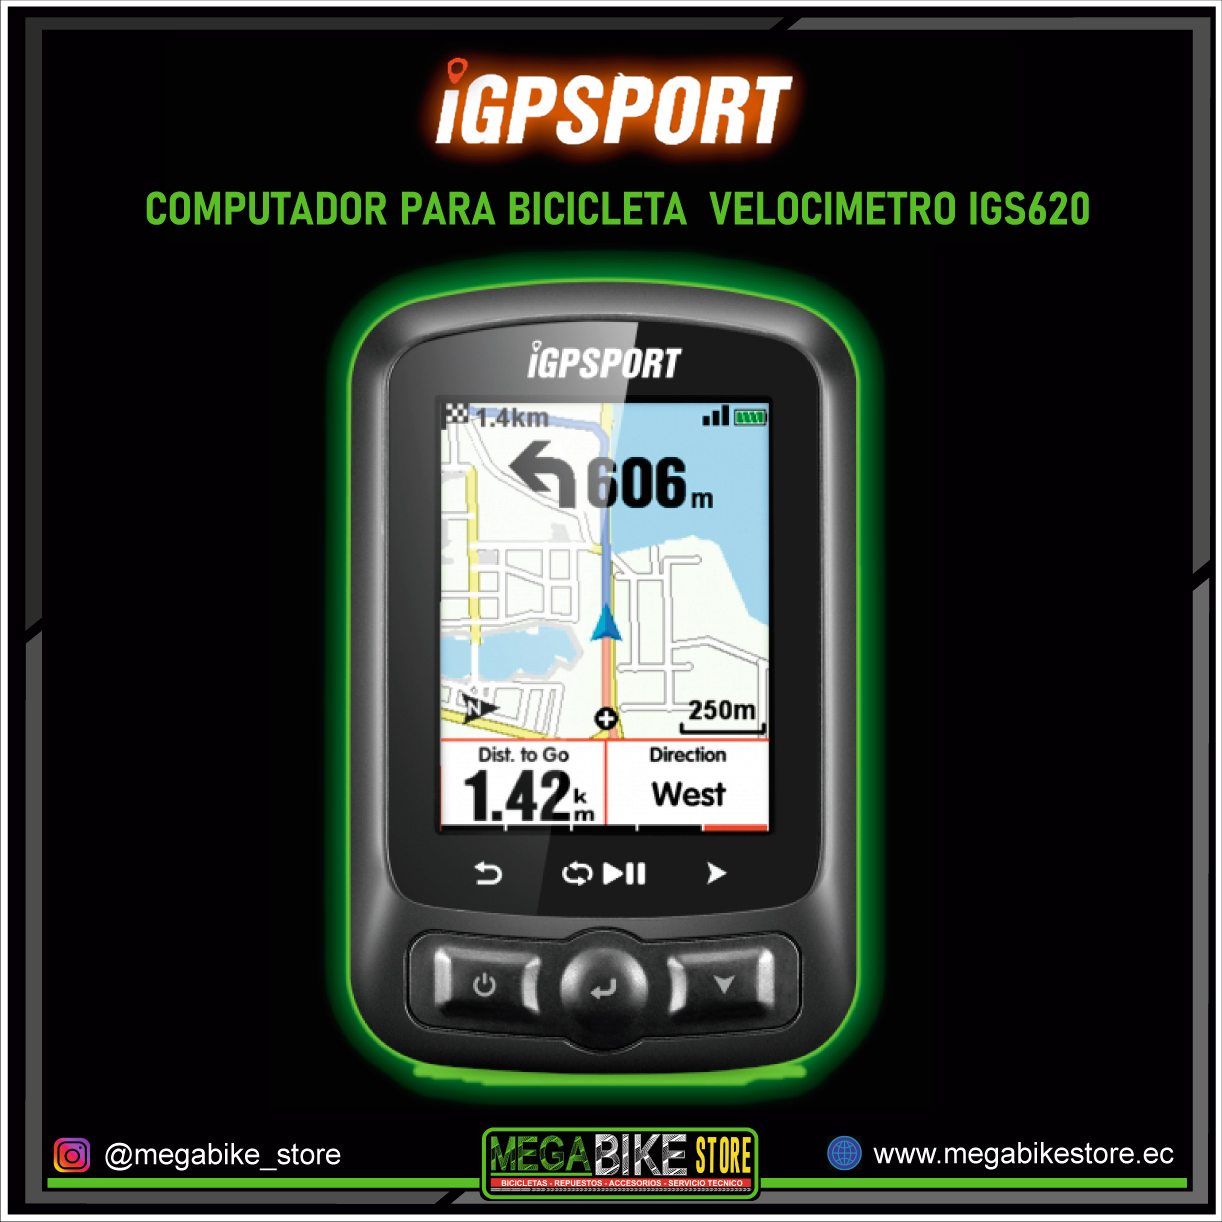 Velocimetro GPS para bicicletas Ciclocomputador IGPSPORT IGS620 .